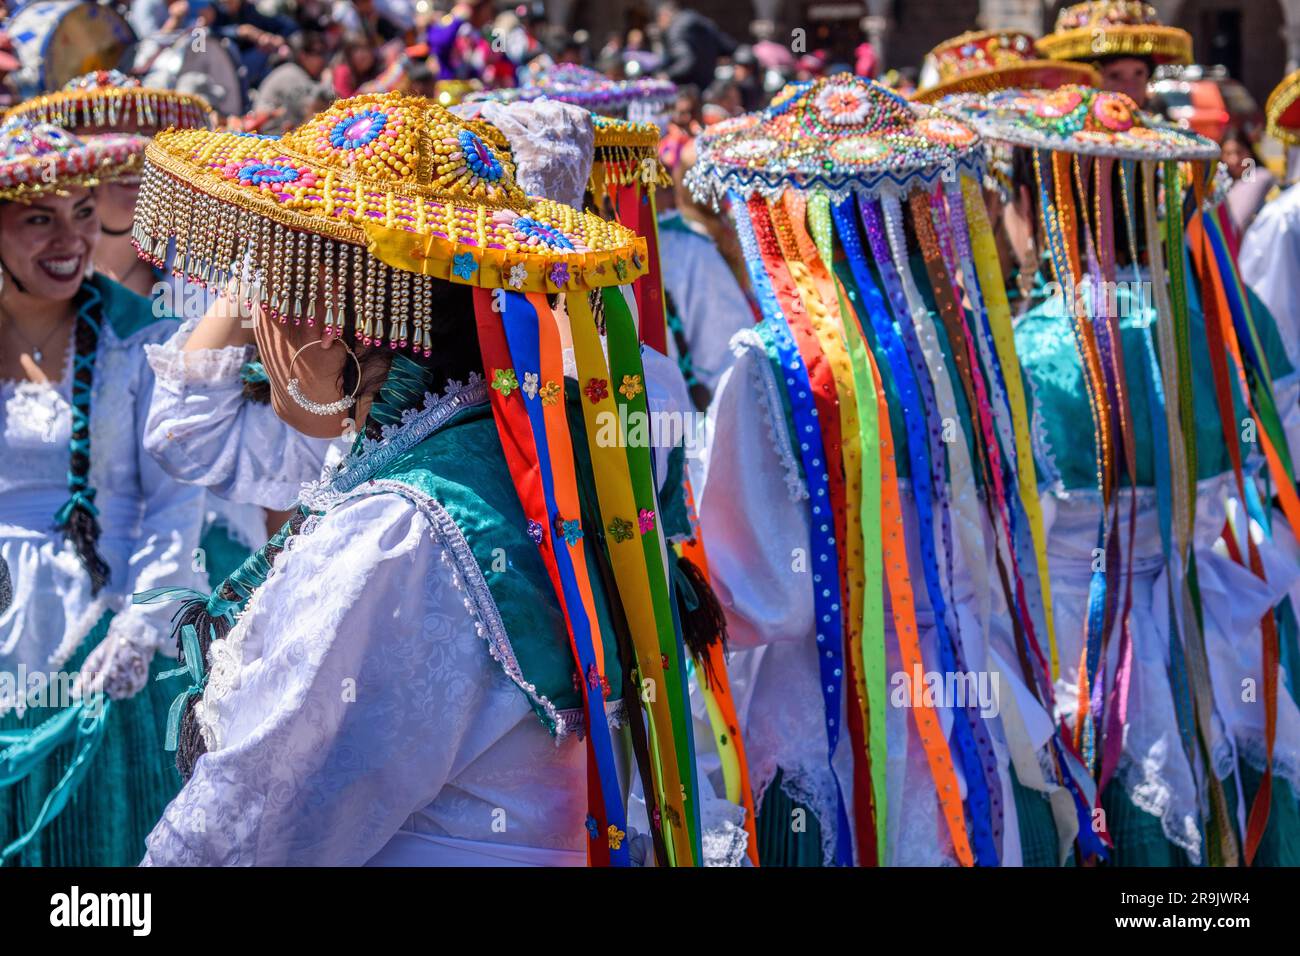 Cusco, une fête culturelle, une foule de personnes vêtues de costumes traditionnels colorés avec des masques et des chapeaux, des banderoles aux couleurs vives. Banque D'Images